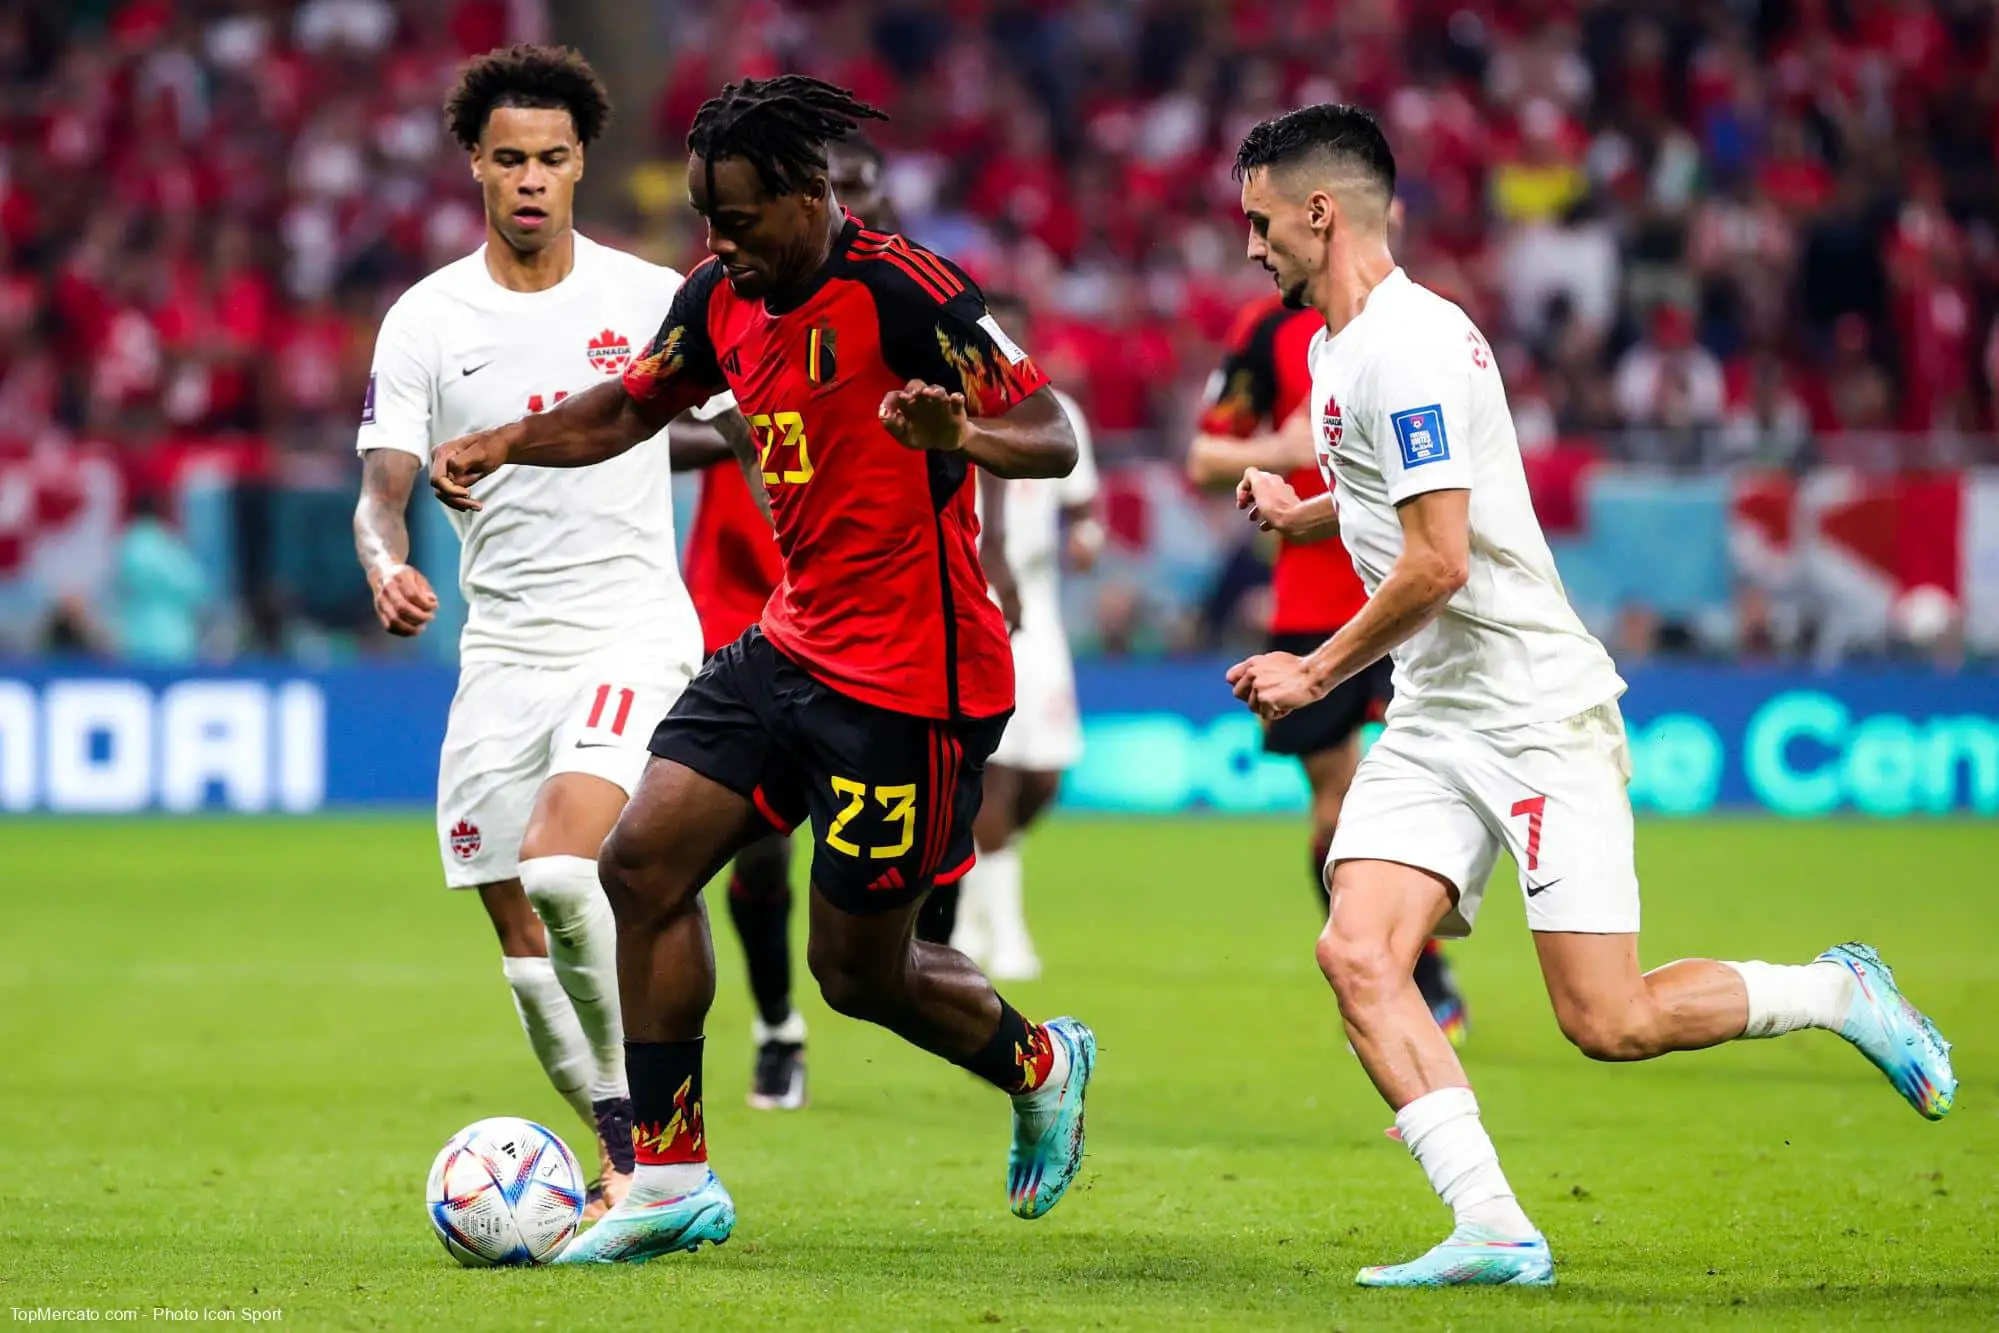 Mondial 2022 - groupe F: la Belgique battue logiquement par le Maroc (2-0), le Canada éliminé